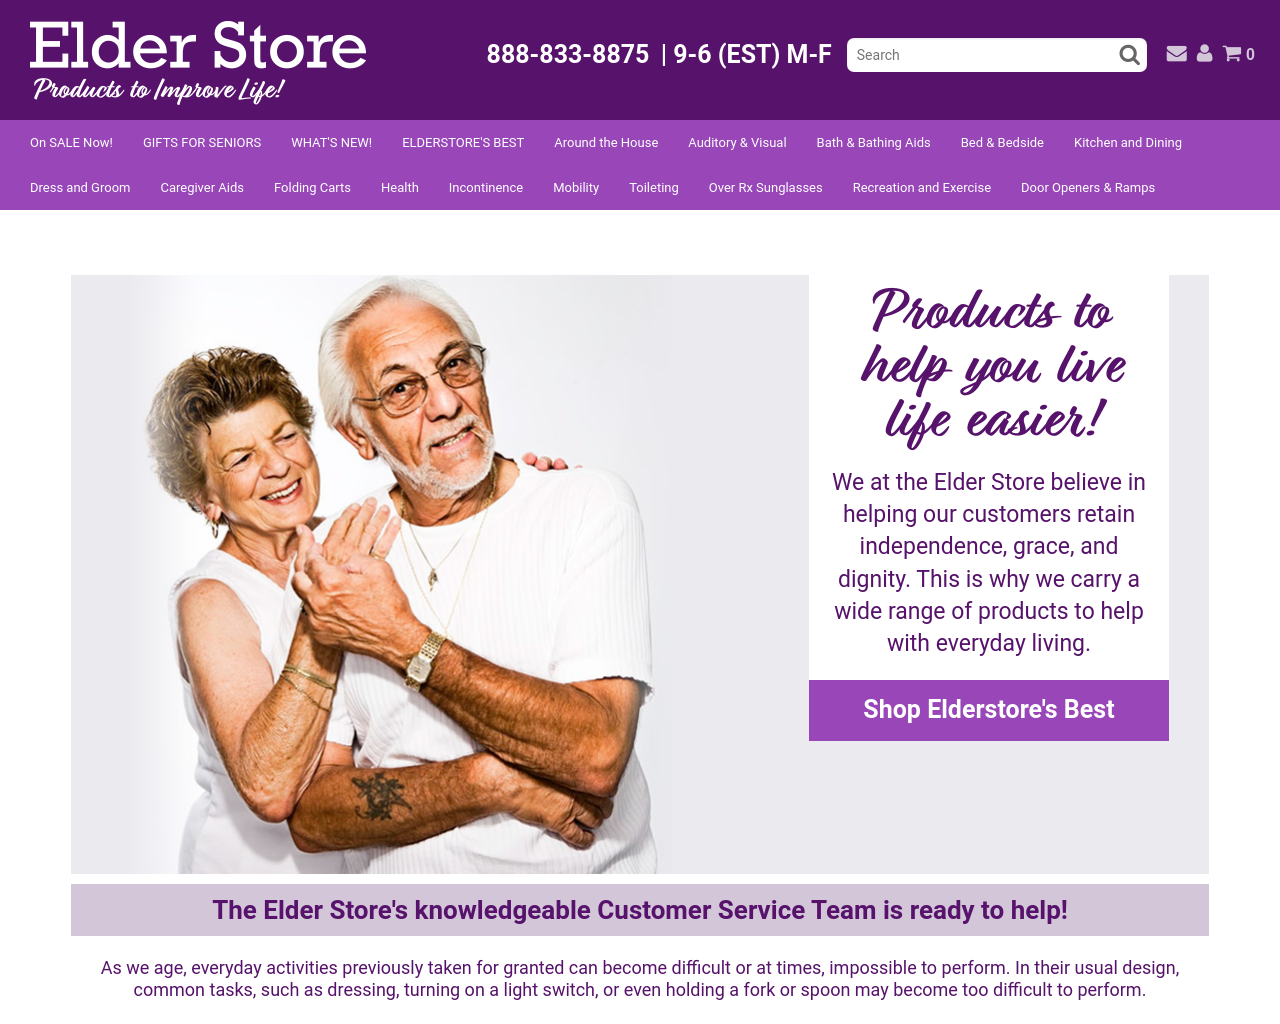 elderstore.com